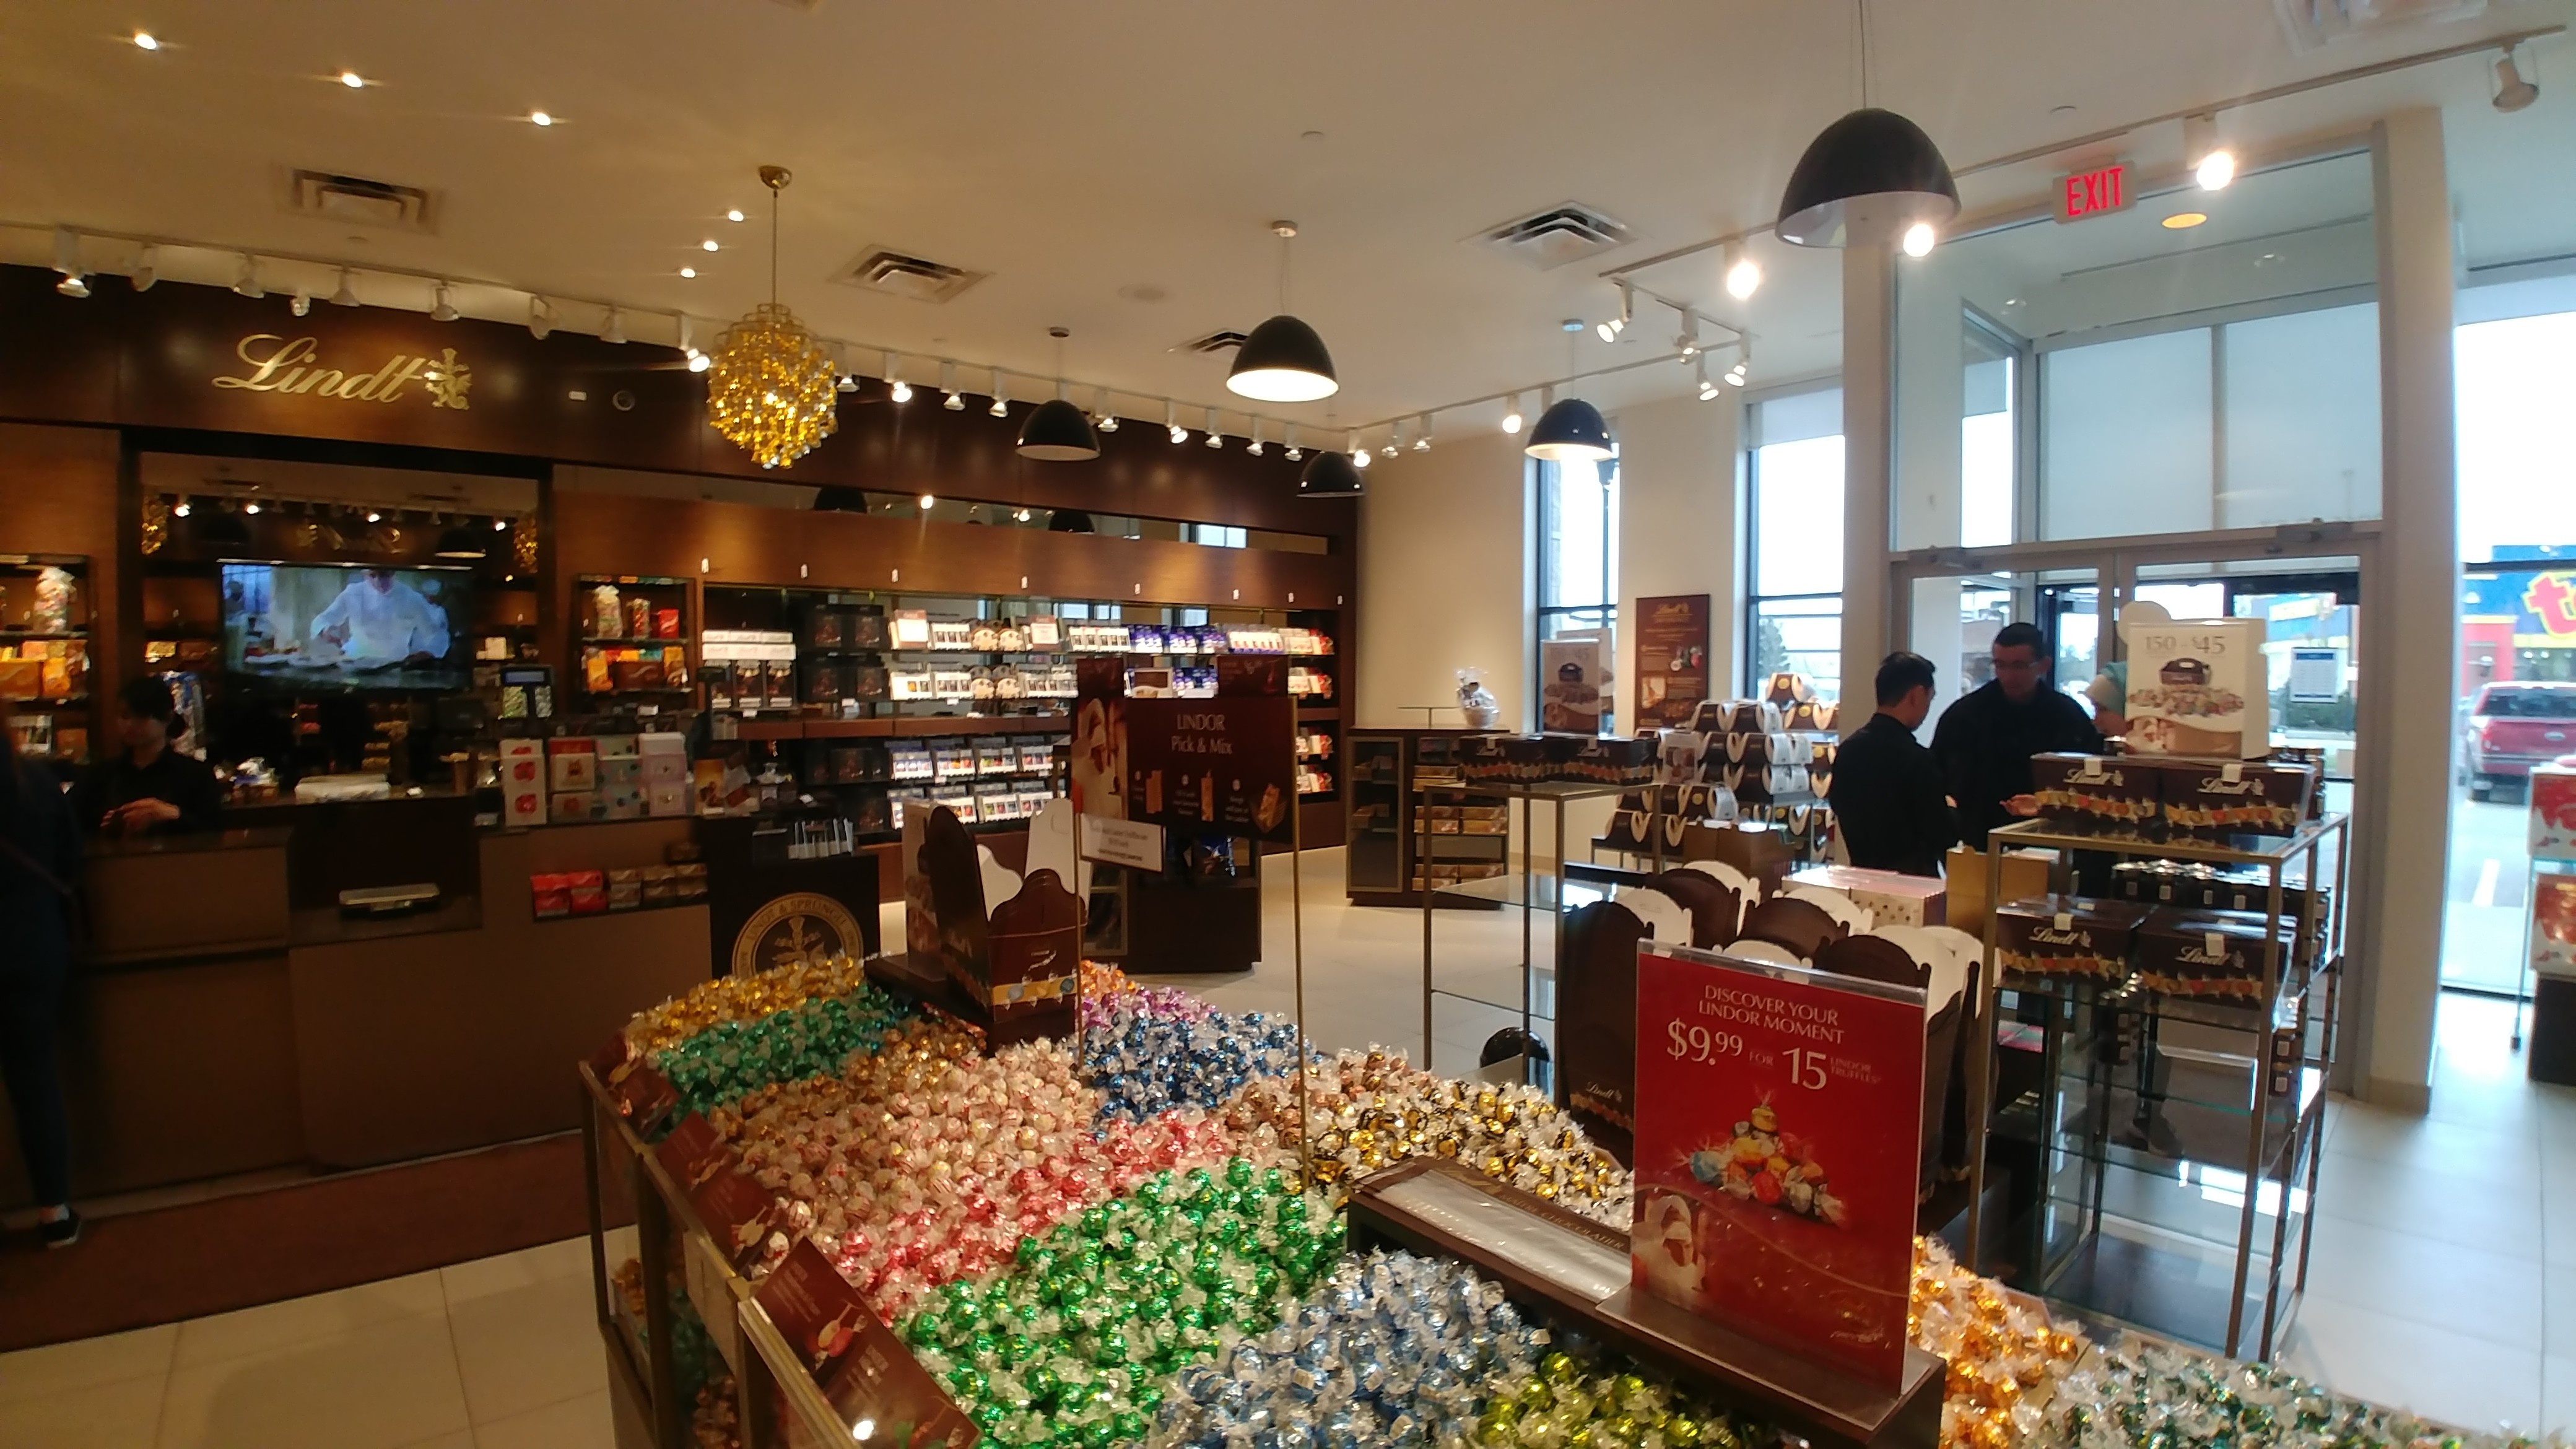 Lindt Chocolate Shop - Edmonton